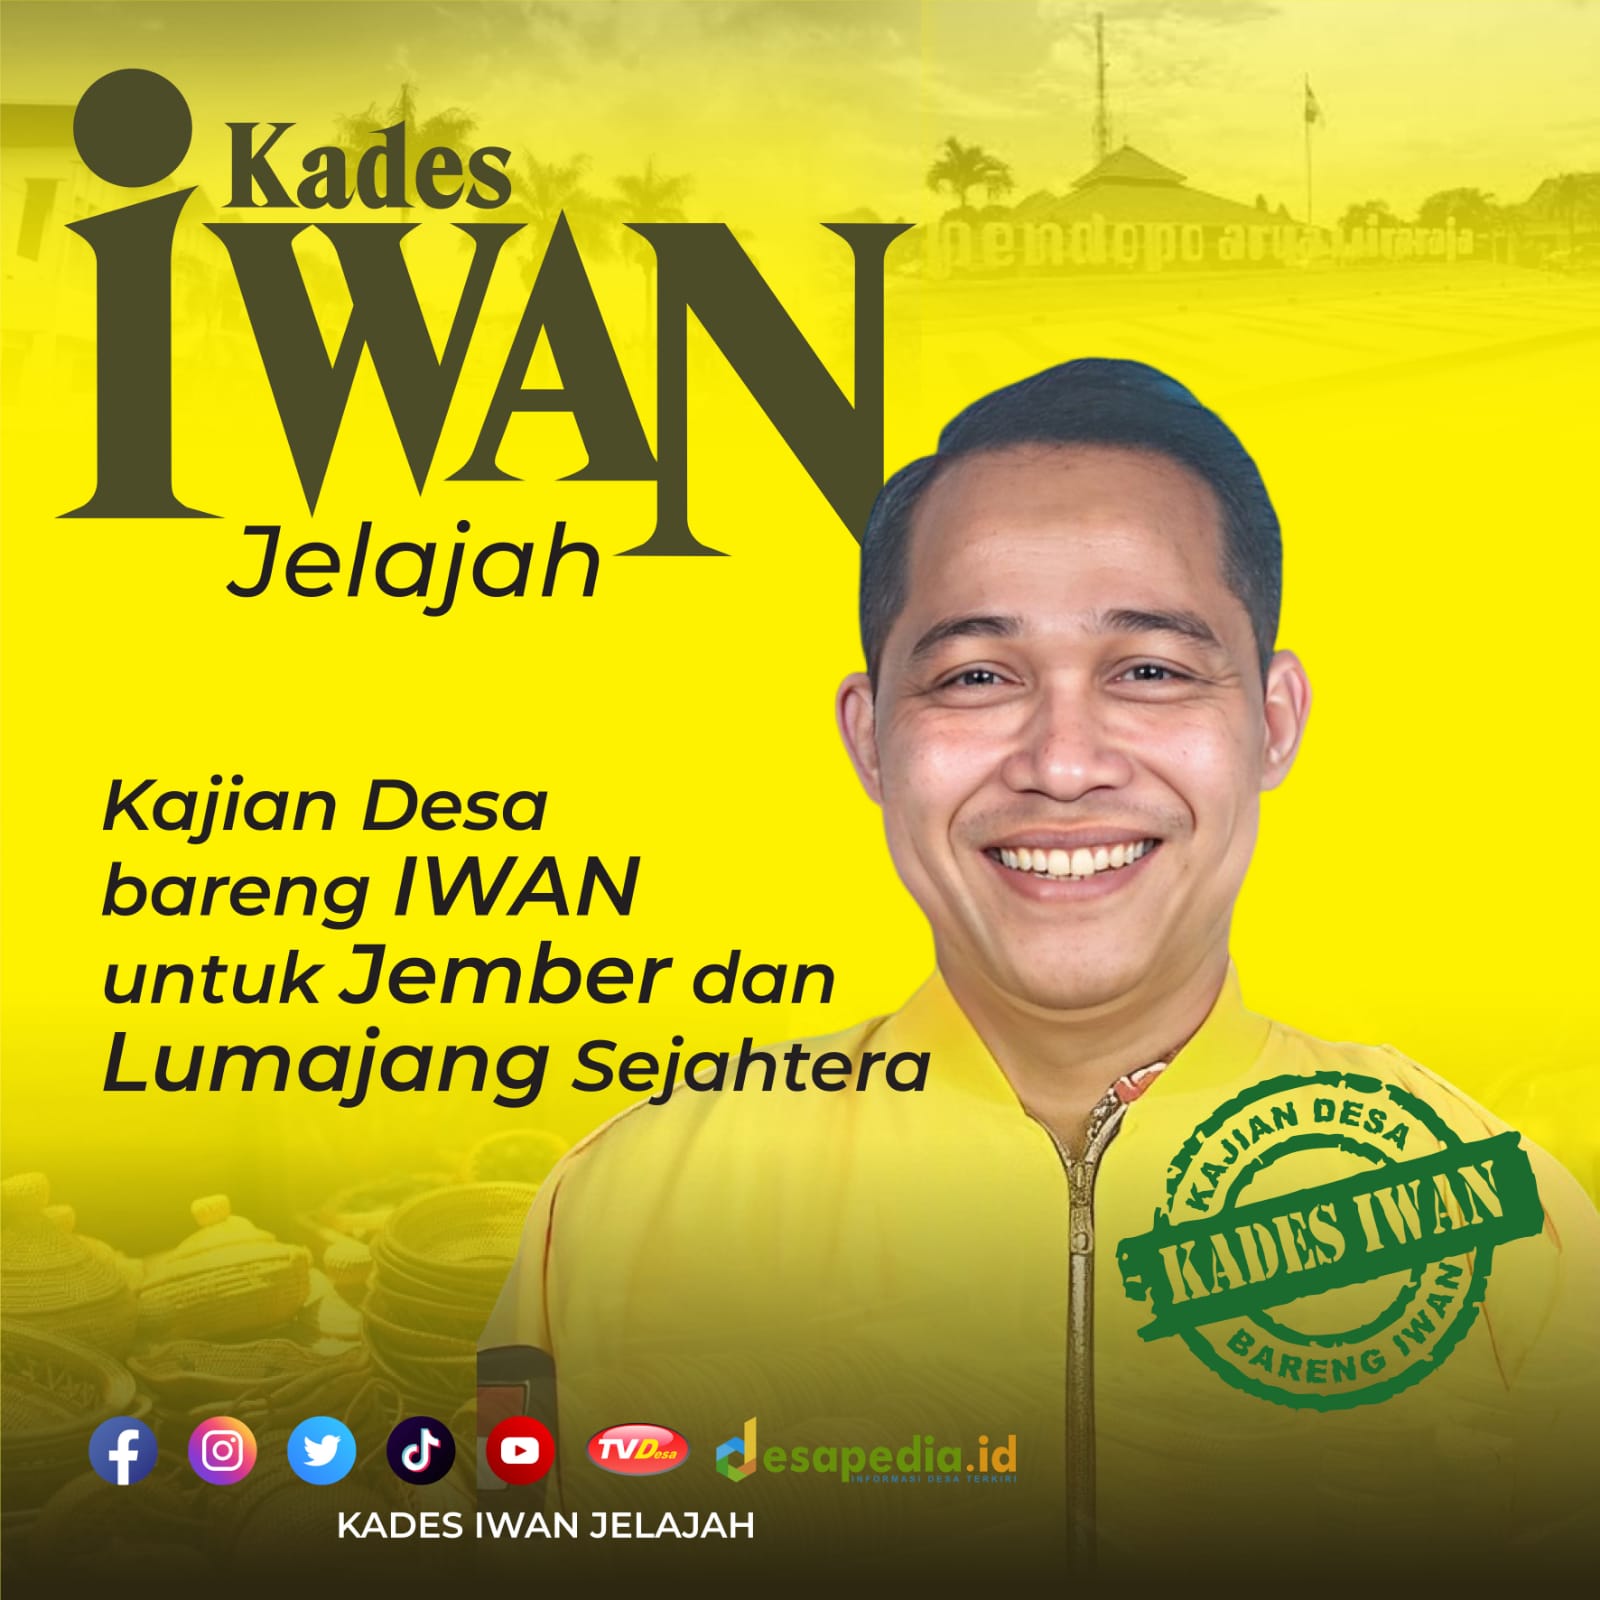 Penyaluran Dana Desa Rendah, ‘Kades Iwan’ Desak Kementerian dan Lembaga Bertanggung Jawab - Desapedia